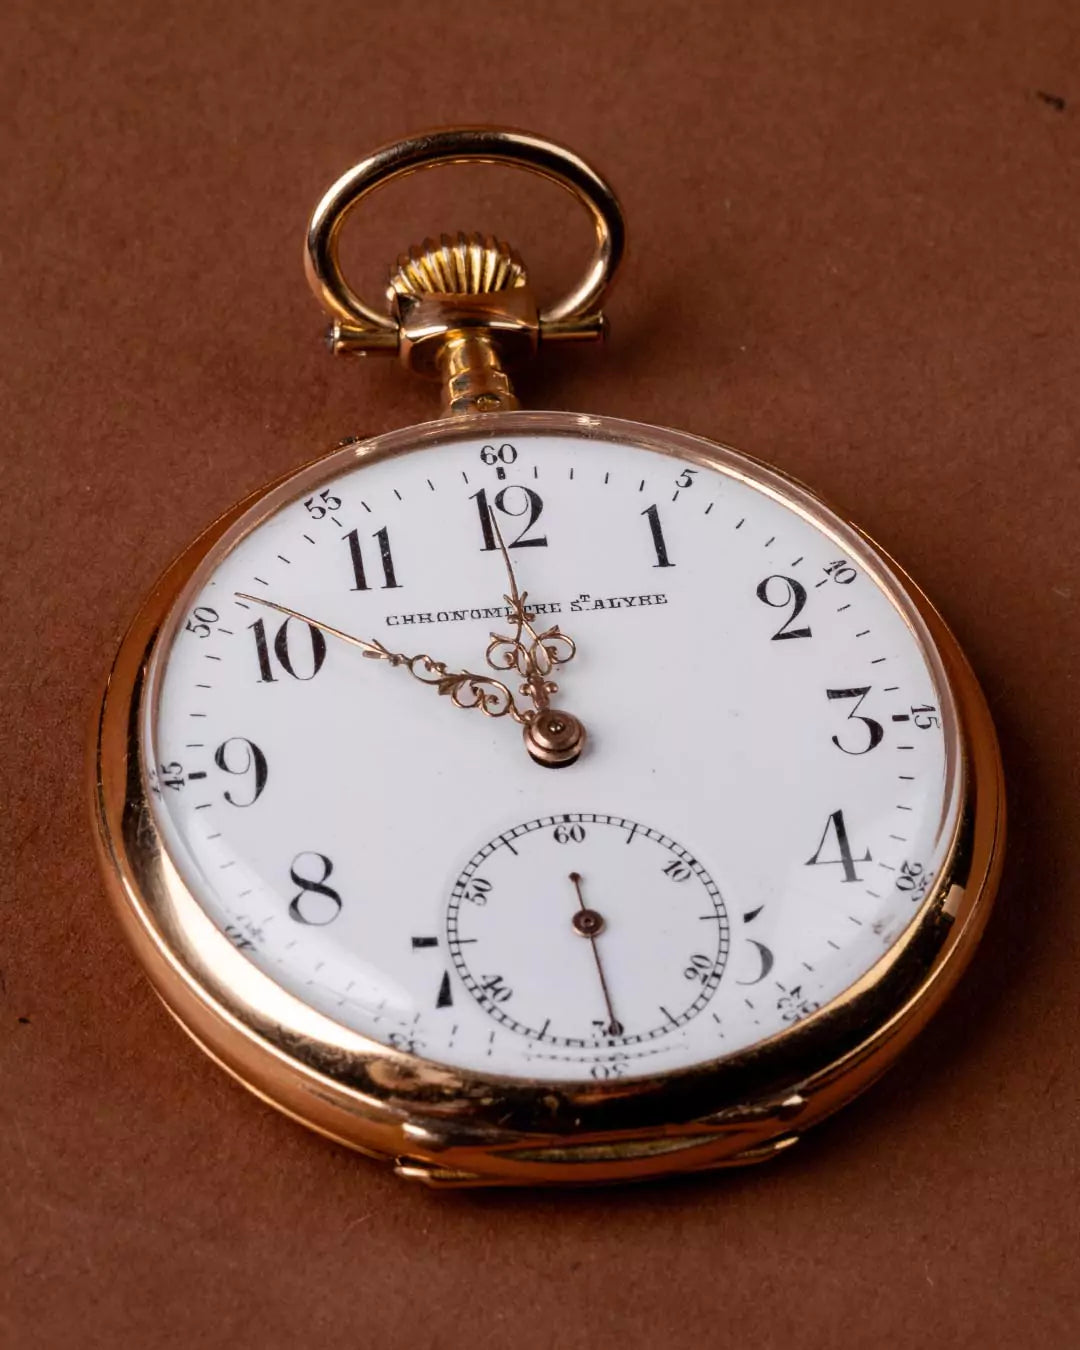 Taschenuhr Chronometre St. Alyre